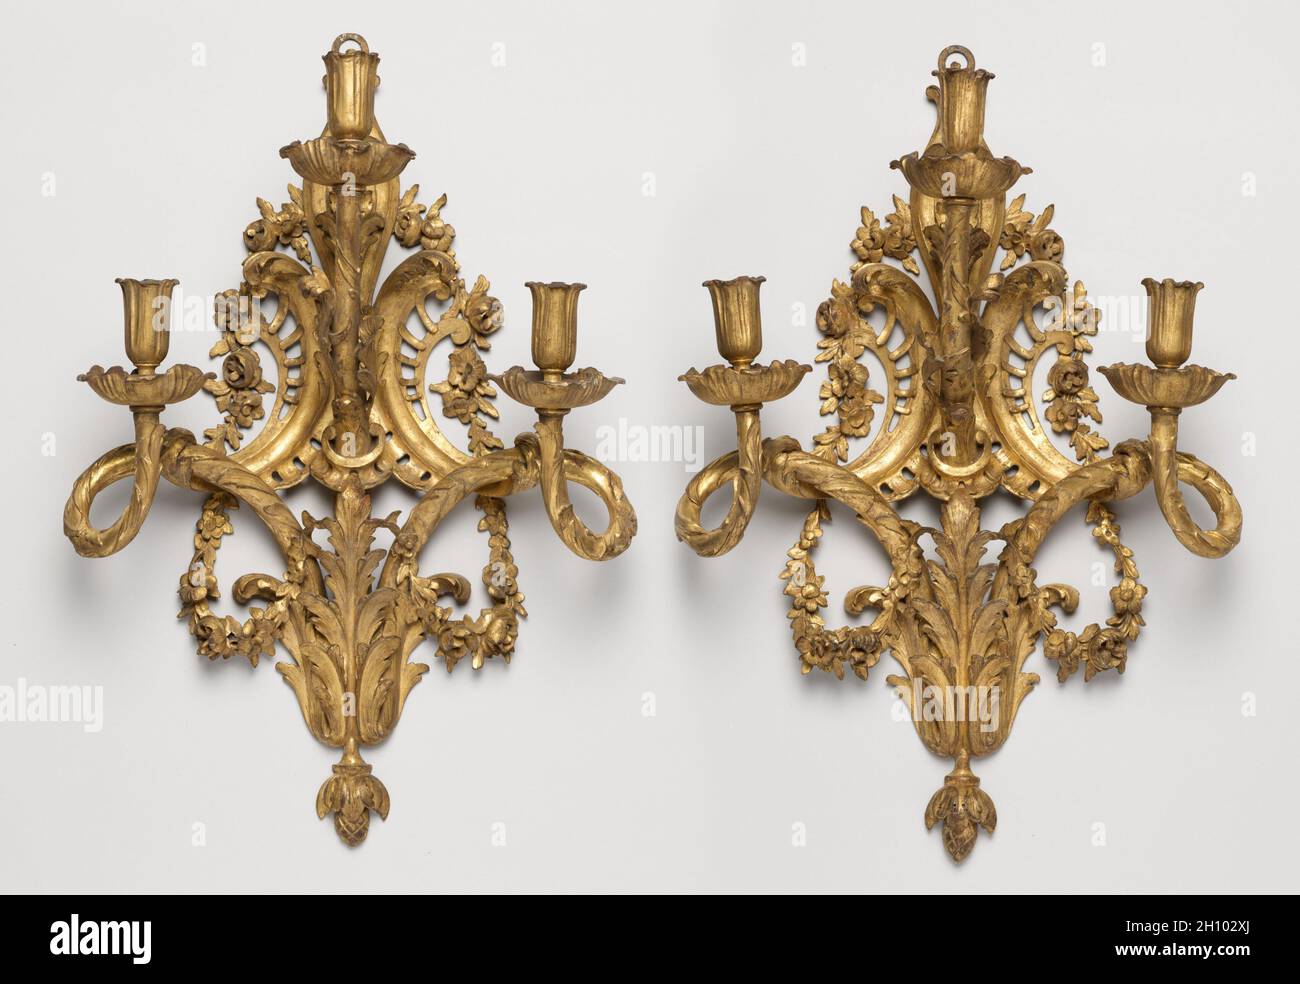 Paire de supports de bougie, c.1765-1775.France, style transitoire, Louis XV à Louis XVI, 18e siècle.Bois doré; chacun: 54.5 x 37.2 x 22.6 cm (21 7/16 x 14 5/8 x 8 7/8 po). Banque D'Images